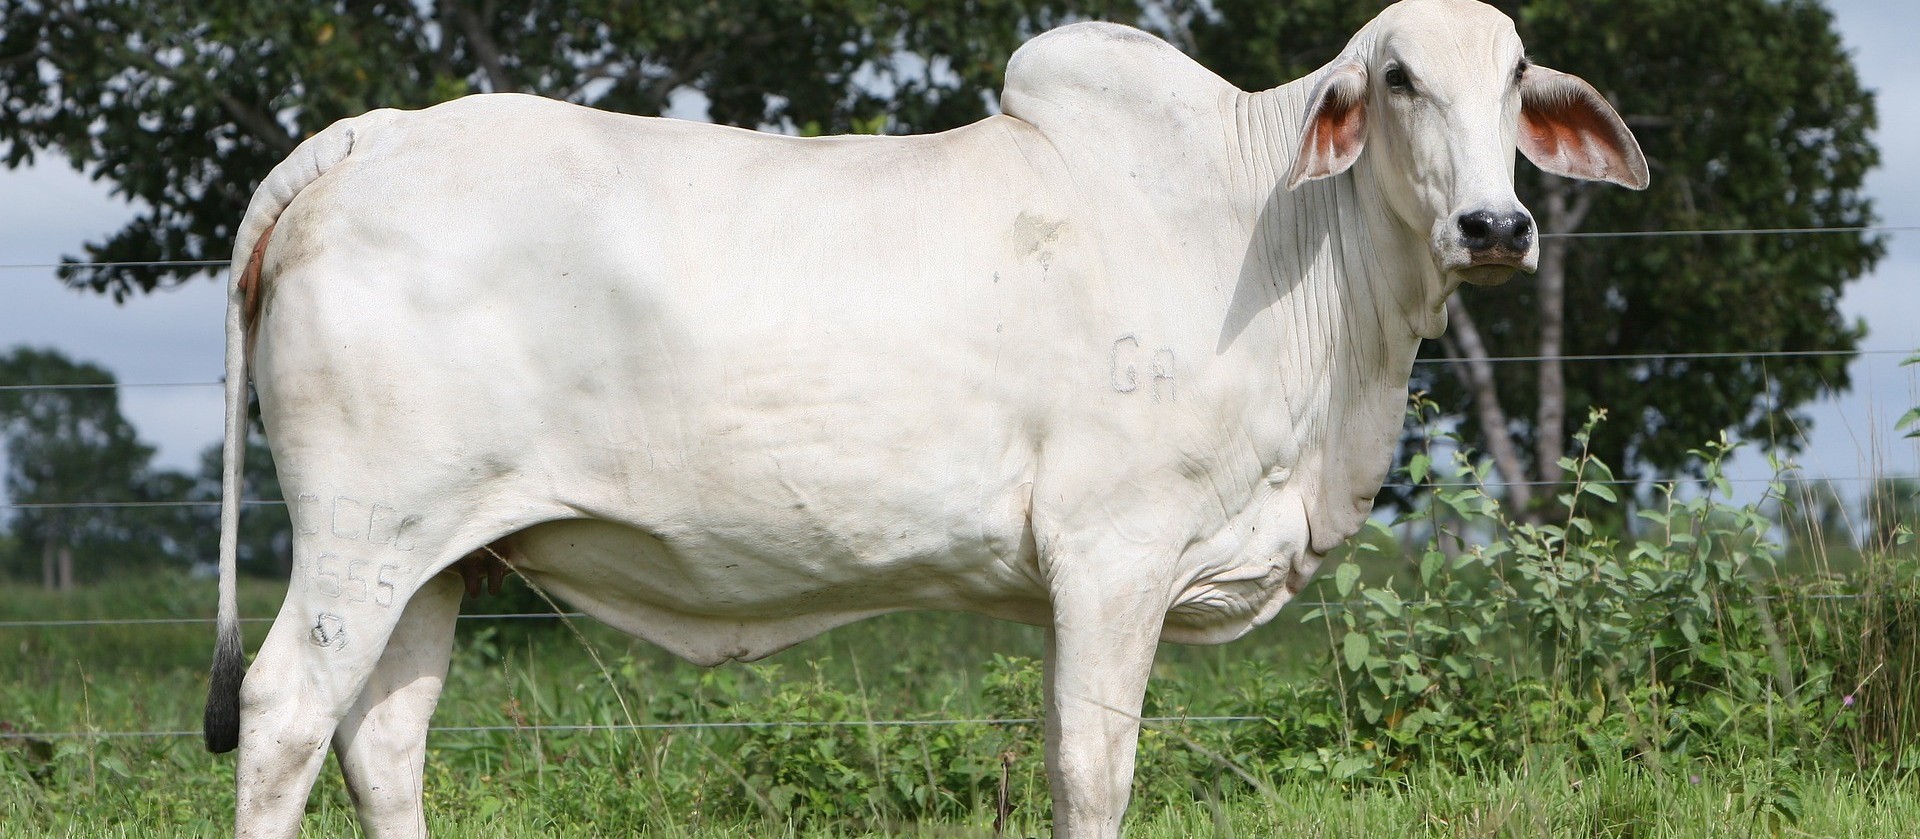 Preço do boi gordo sobe nas regiões pecuárias